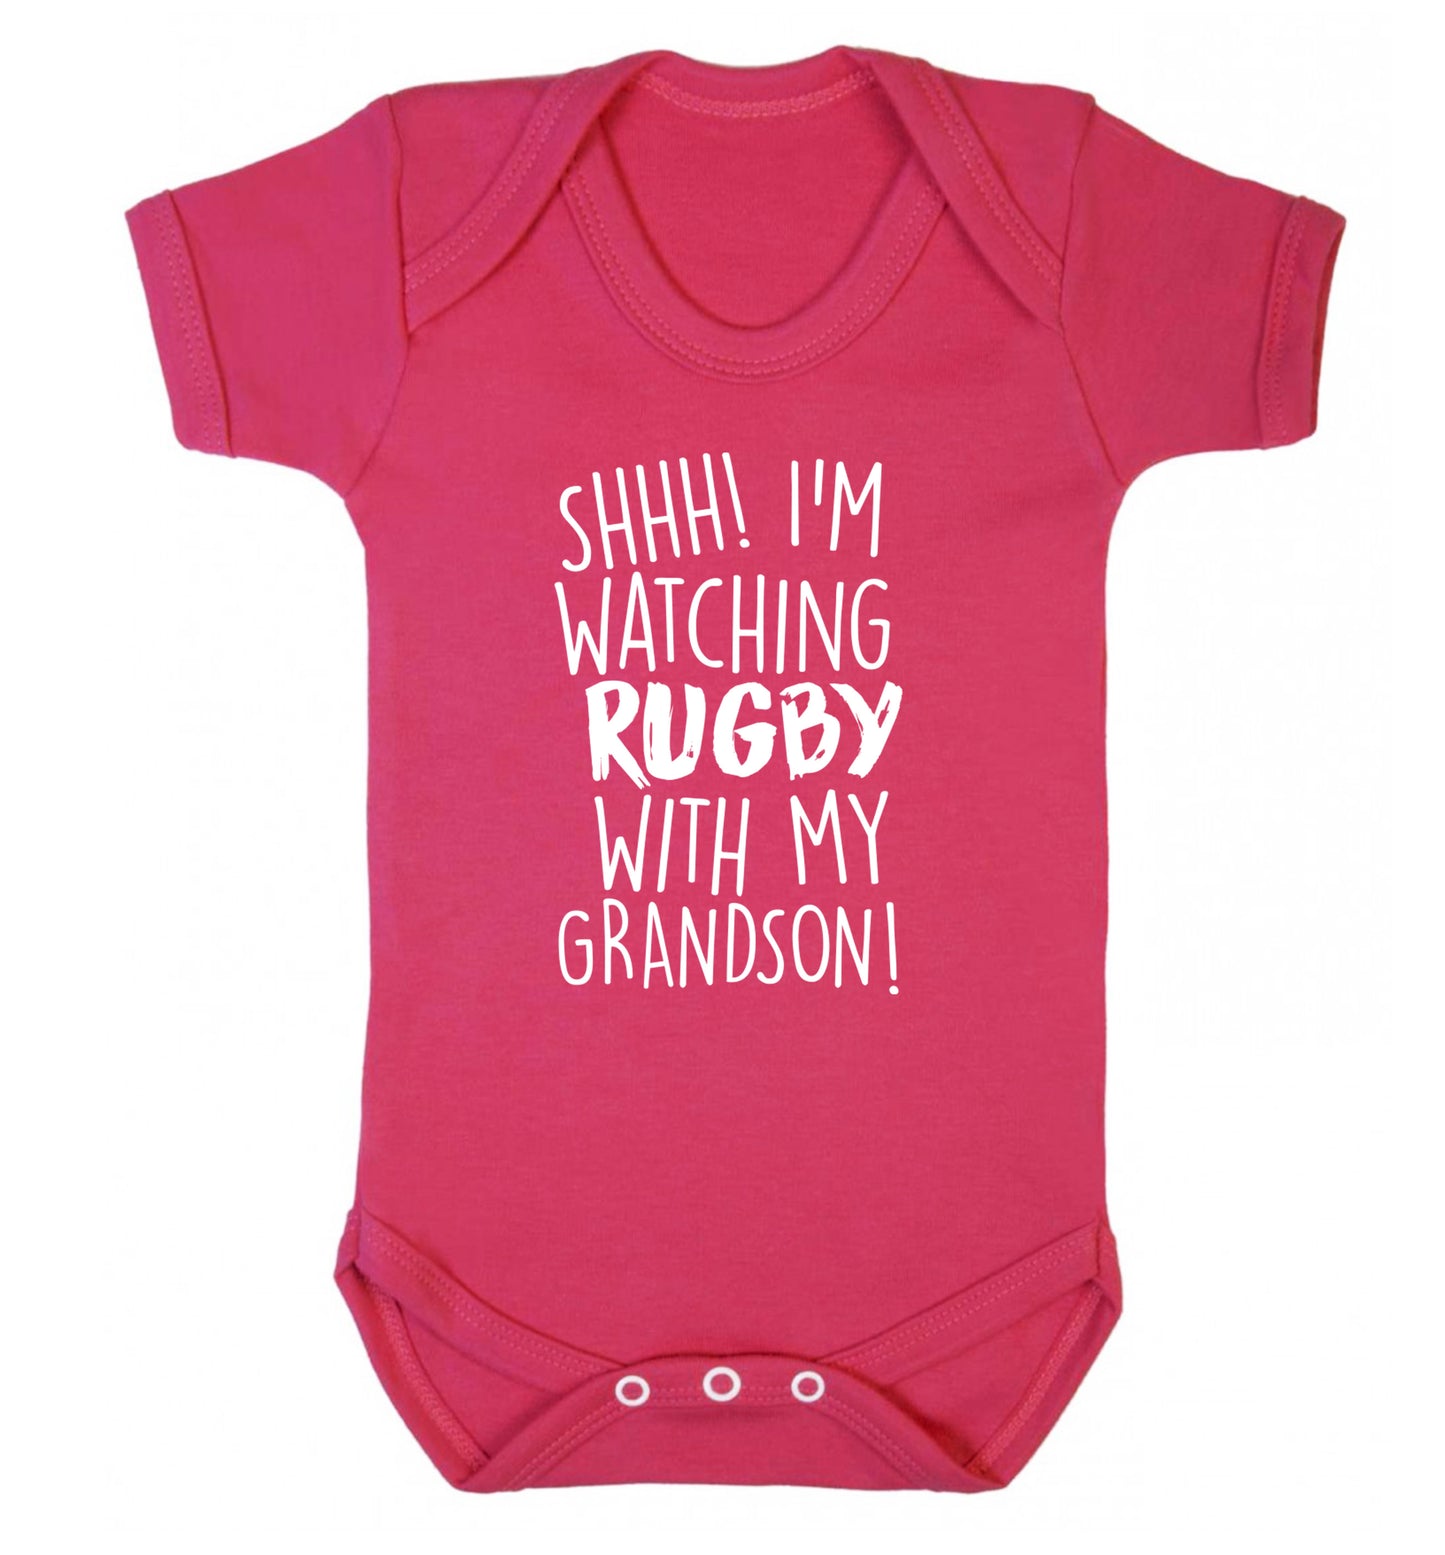 Shh I'm watching rugby with my grandson Baby Vest dark pink 18-24 months